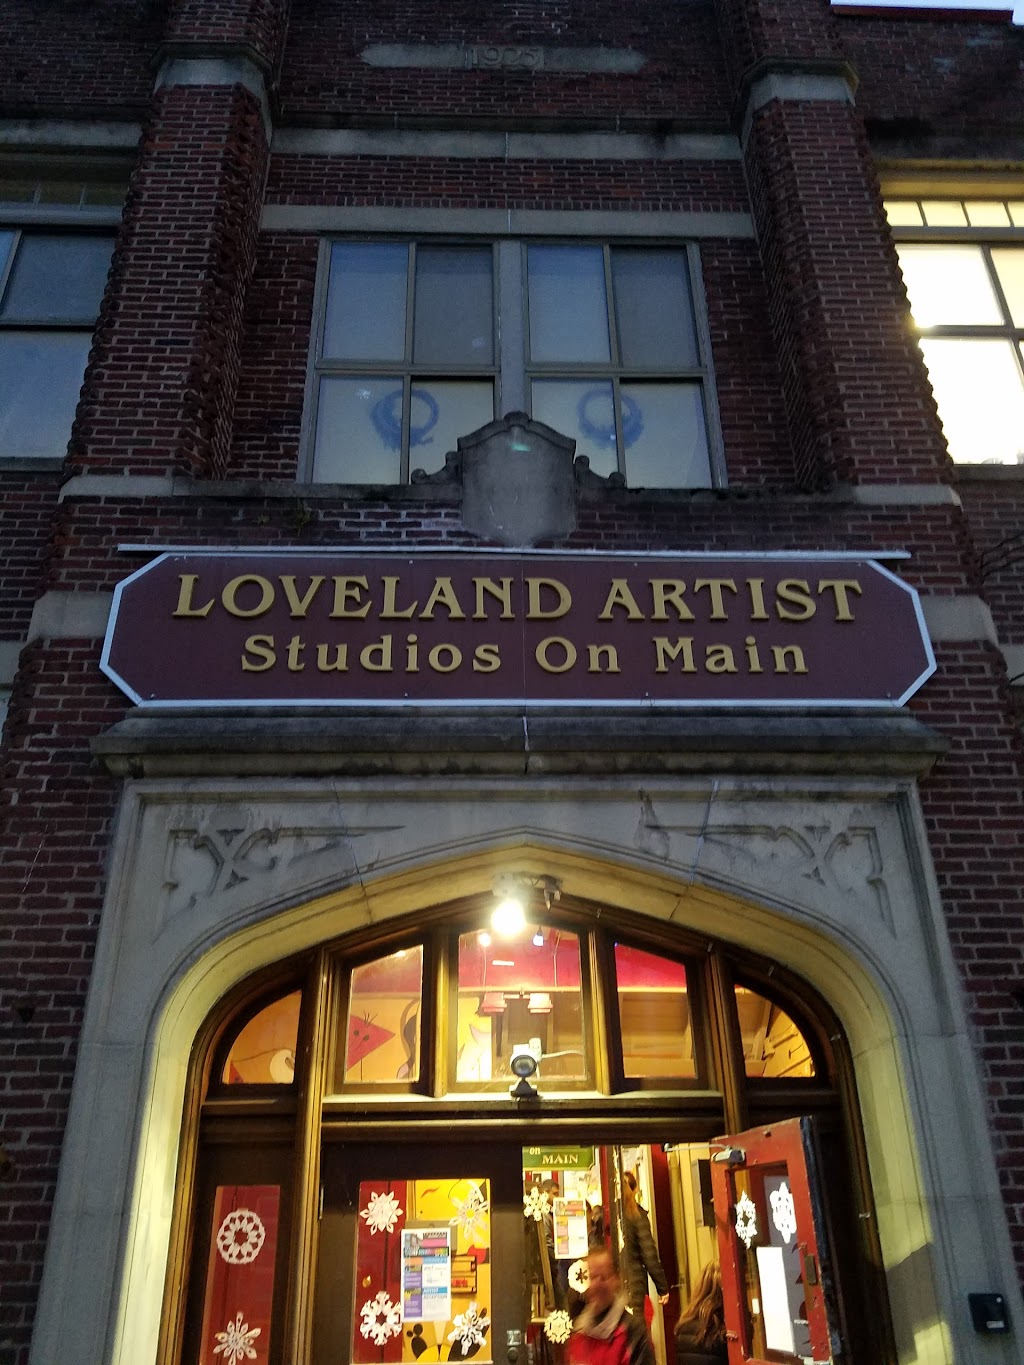 Loveland Artist Studios On Main | 529 Main St, Loveland, OH 45140 | Phone: (513) 683-7283